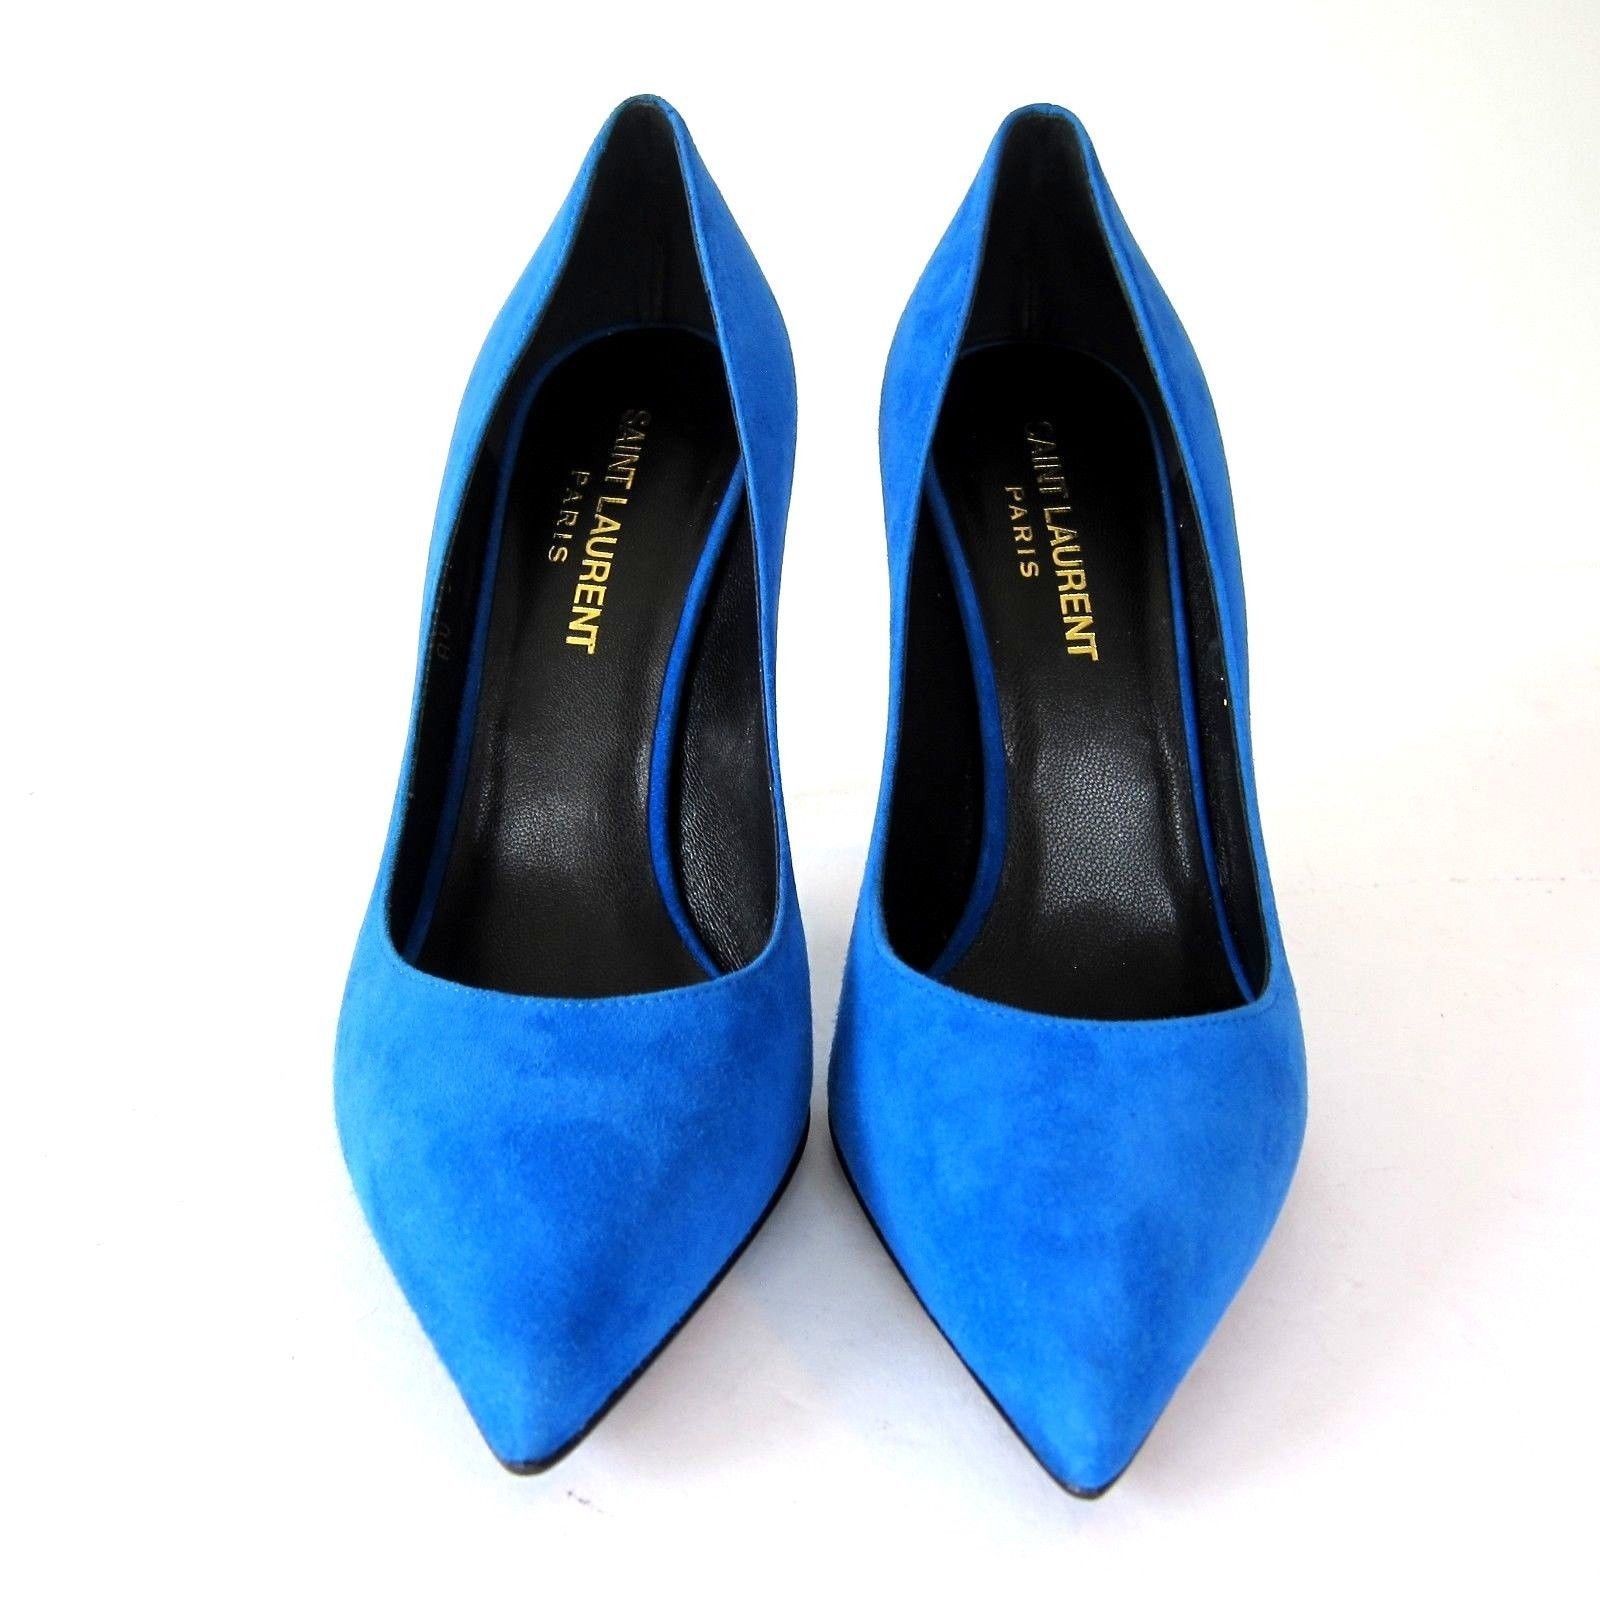 J-3325139 New Saint Laurent Electric Blue High Heels Pump Shoes Size US ...